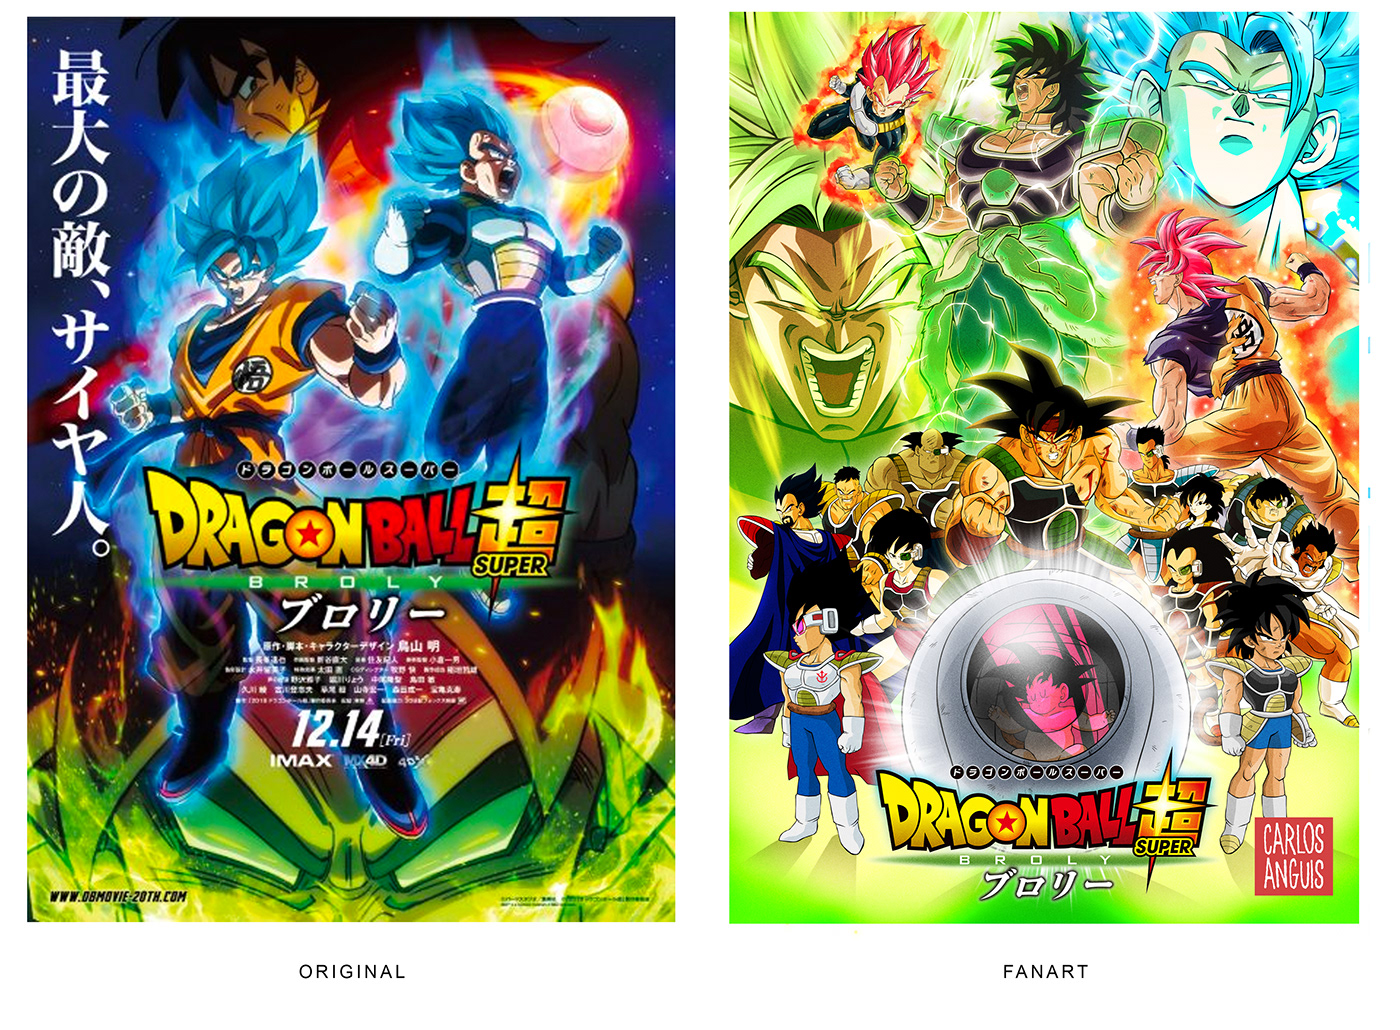 dragon ball goku anime manga Illustrator Broly poster Fan Art movie poster